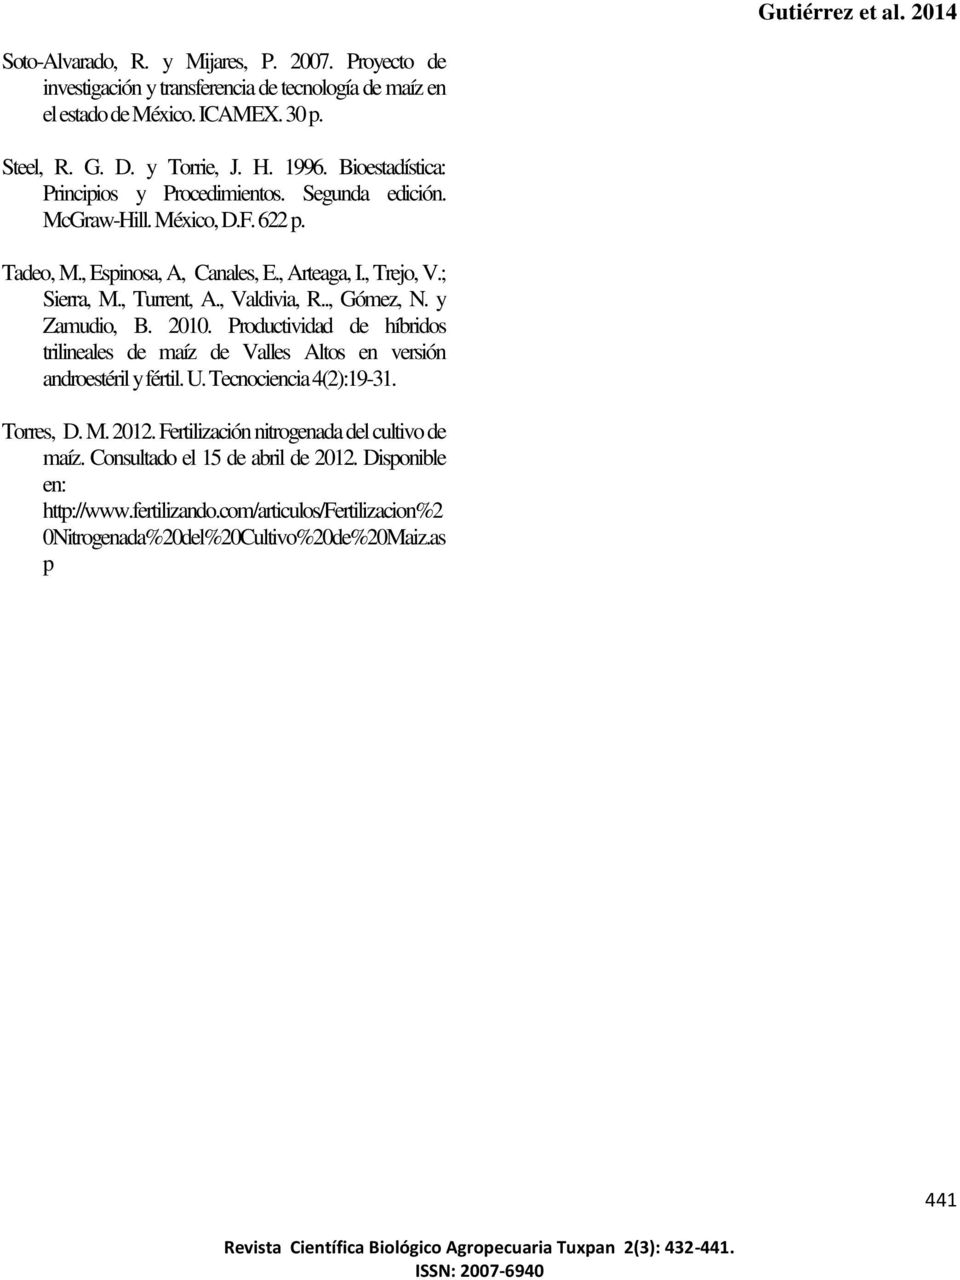 y Zmudio, B. 2010. Productividd de híridos trilineles de míz de Vlles Altos en versión ndroestéril y fértil. U. Tecnocienci 4(2):19-31. Torres, D. M. 2012.